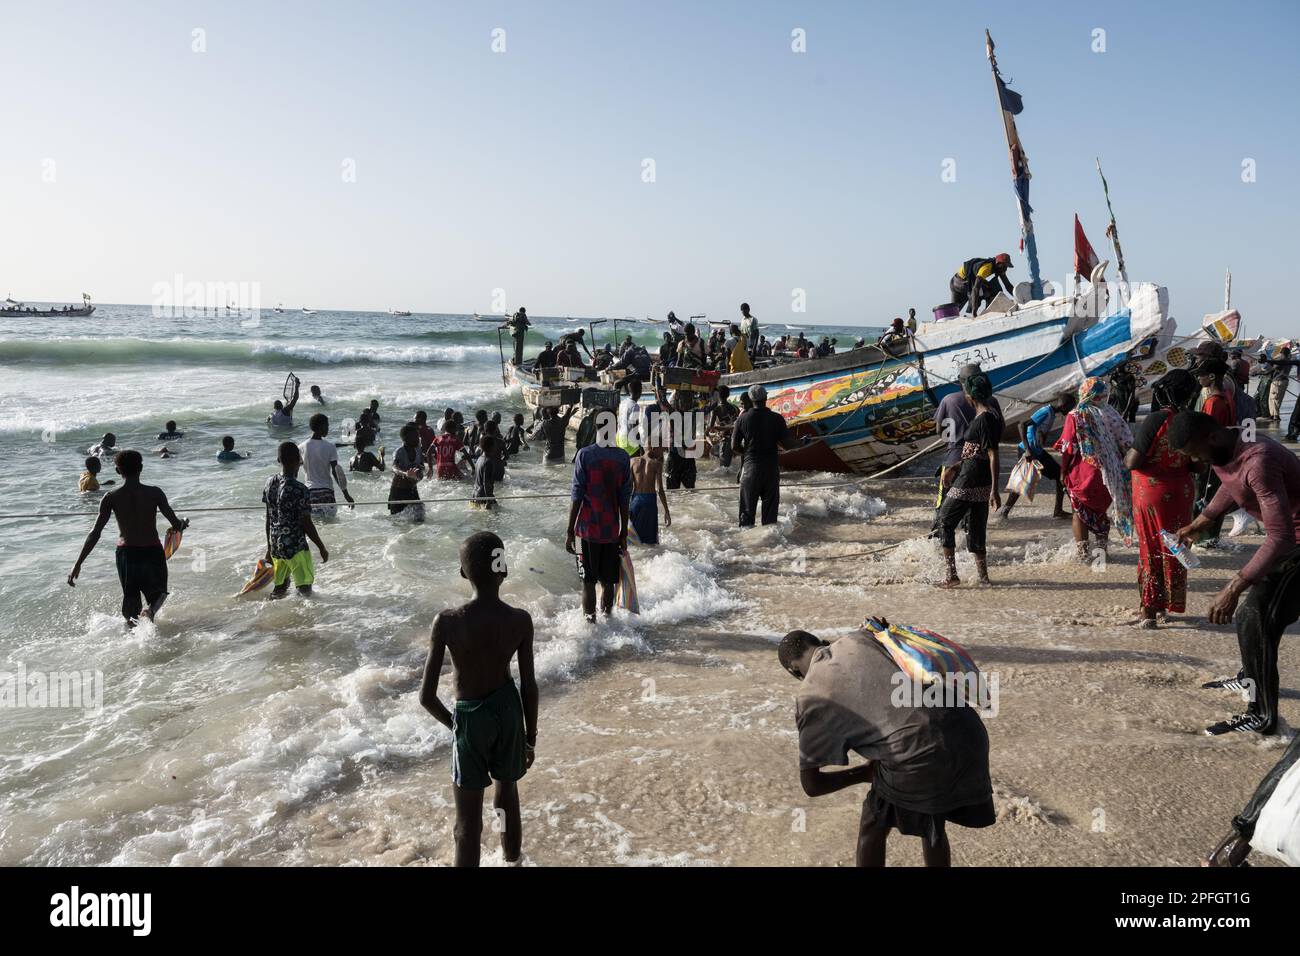 African fishermen unloading the day's catch of fish. Port de Peche, Nouakchott's famous fish market, plage des pecheurs. Mauritania. Stock Photo